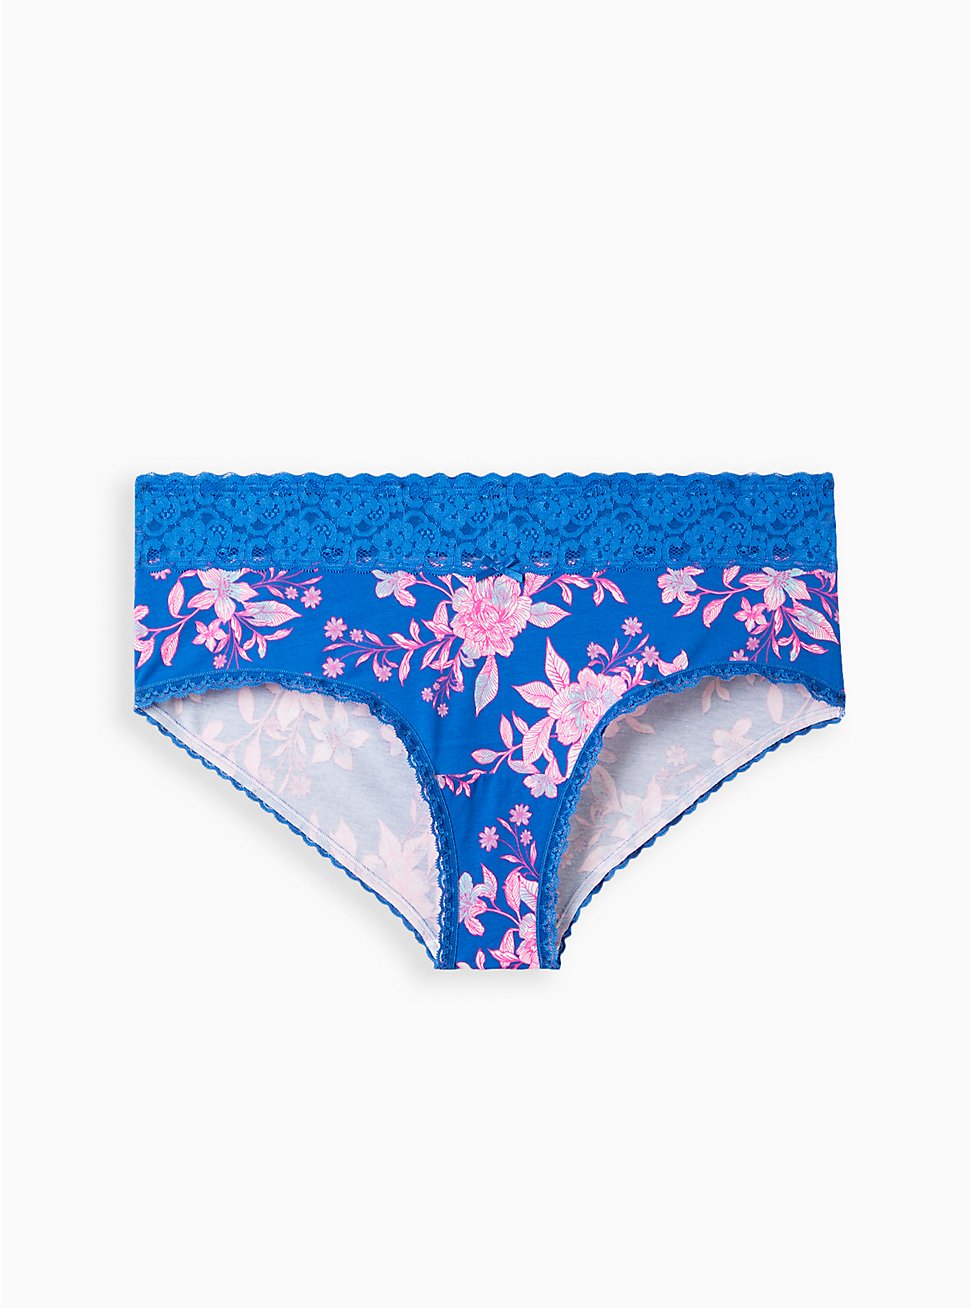 Plus Size Wide Lace Trim Cheeky Panty - Cotton Floral Blue, LILLIAN FLORAL BLUE, hi-res